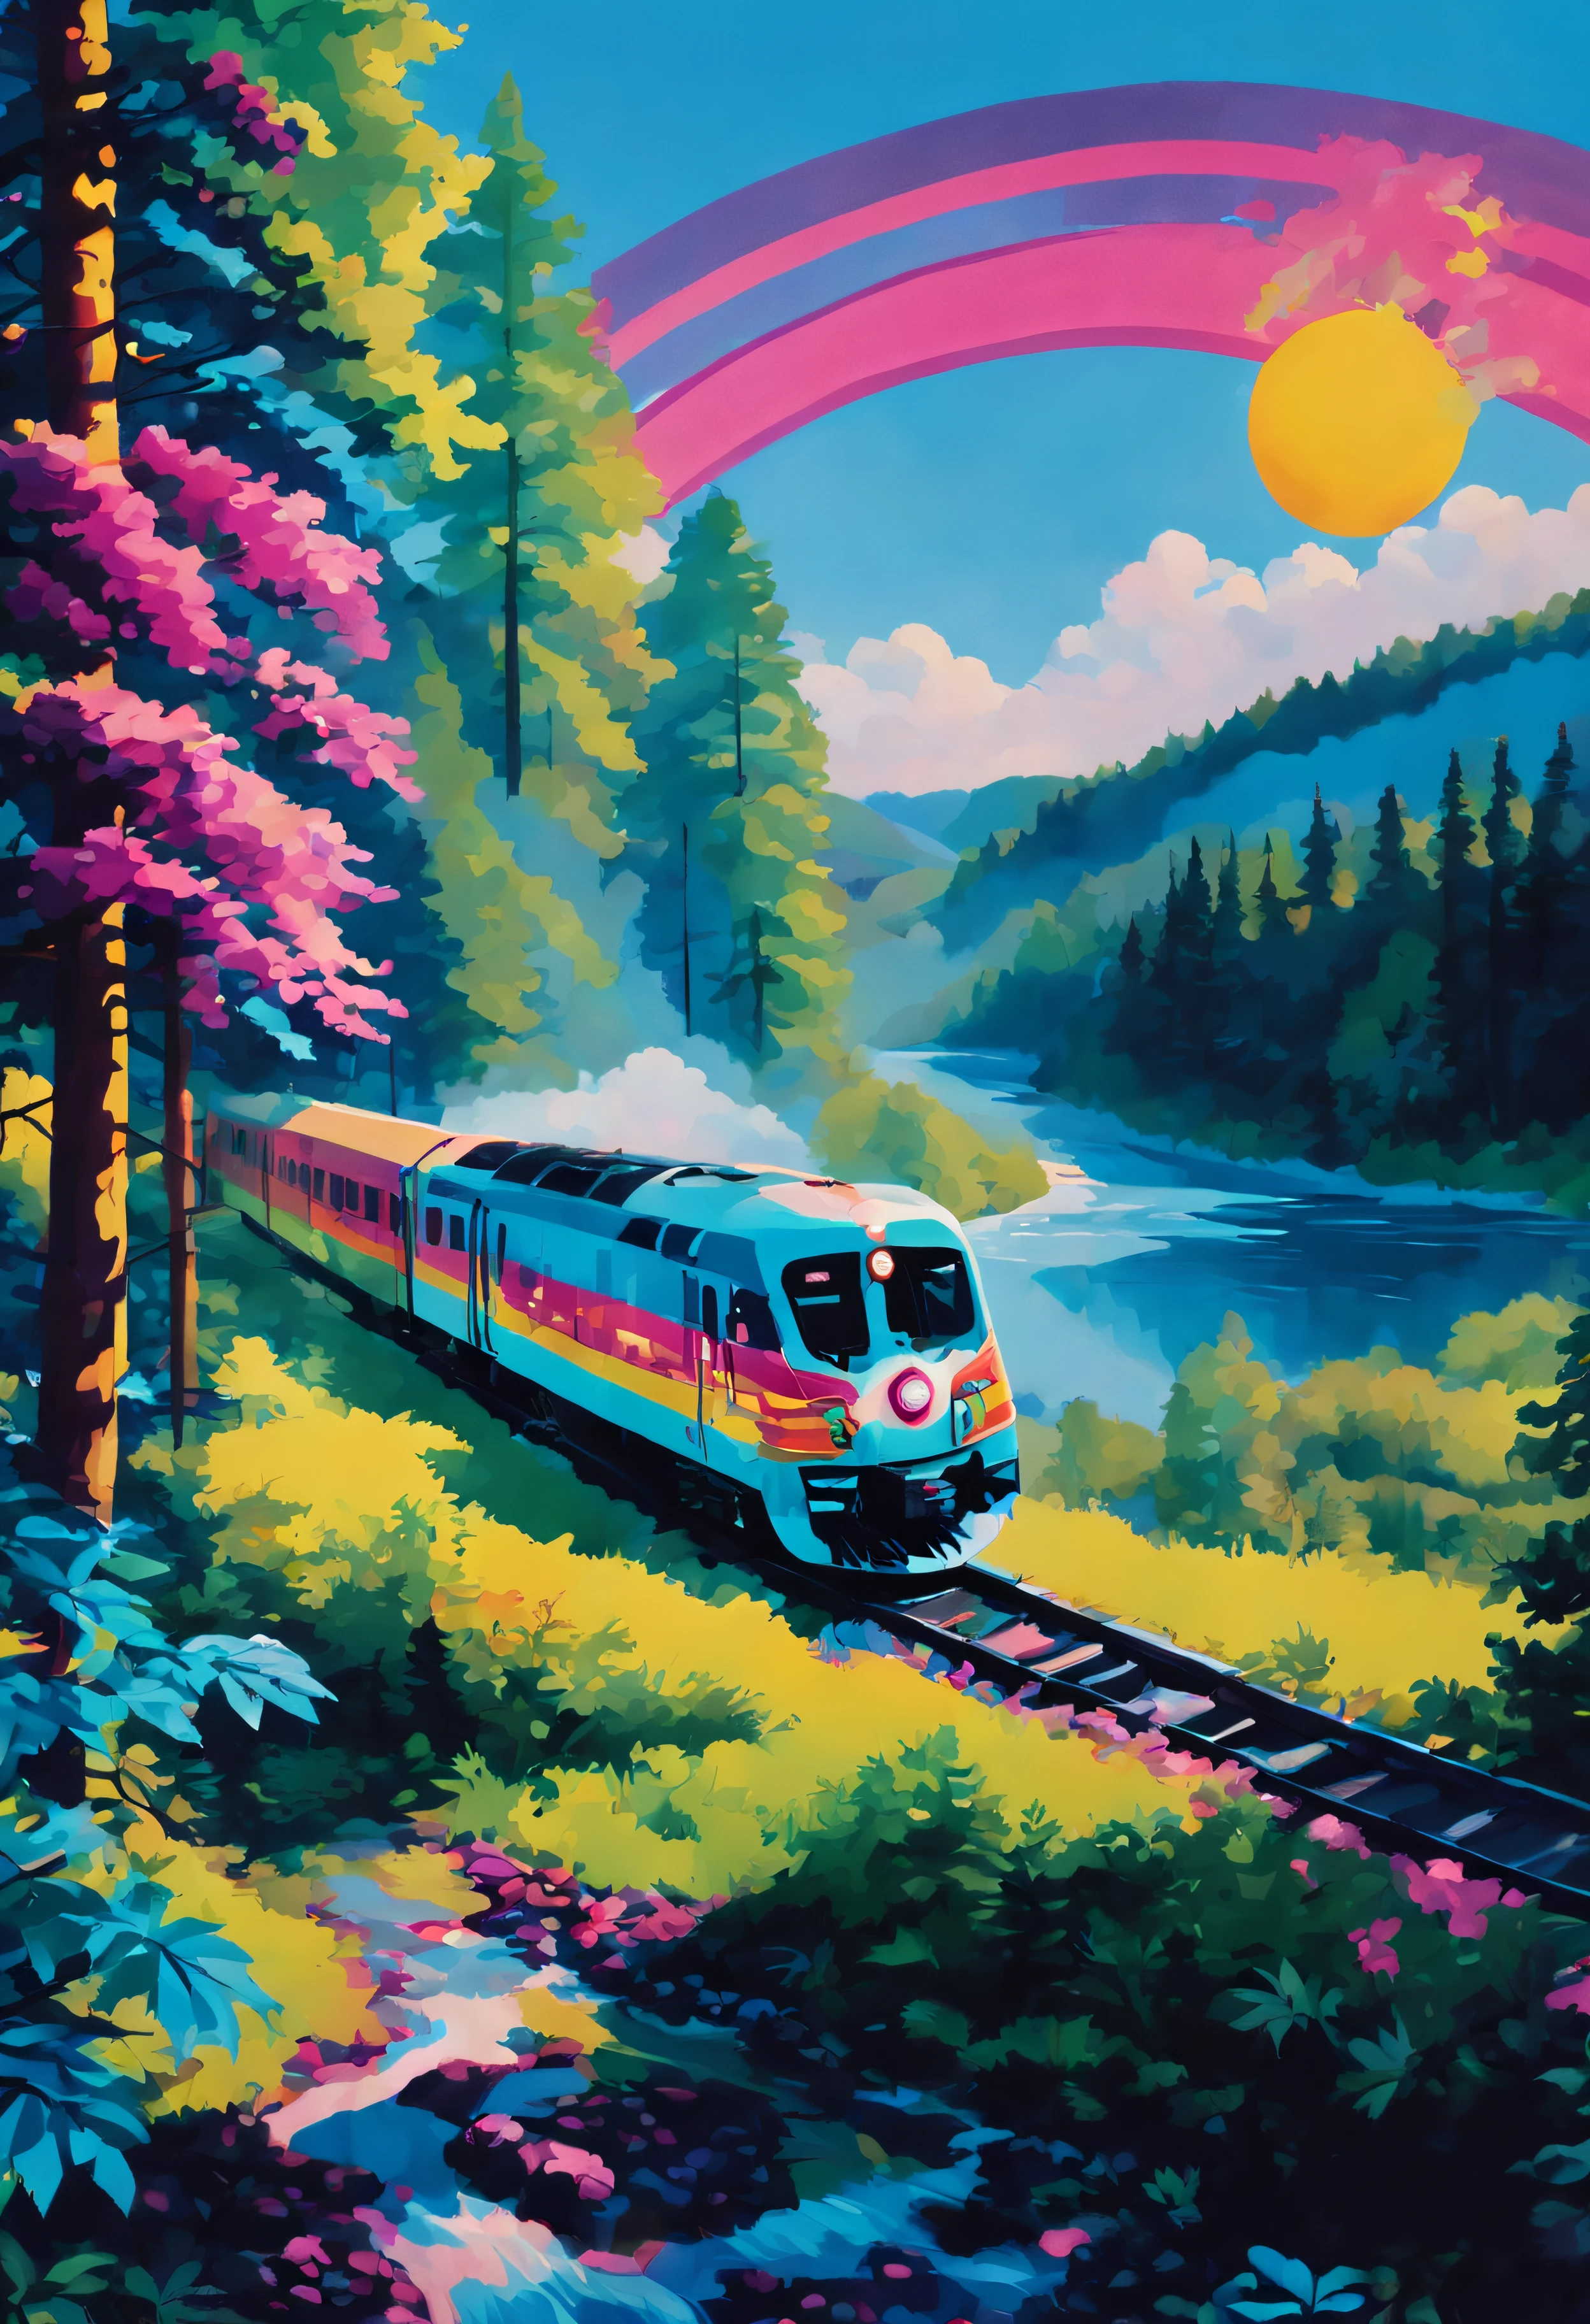 Neon-Stil, Ein Zug fährt durch einen Wald. Der Zug ist von Bäumen umgeben. Der Himmel ist blau und die Sonne scheint. Im Hintergrund ist ein Fluss.